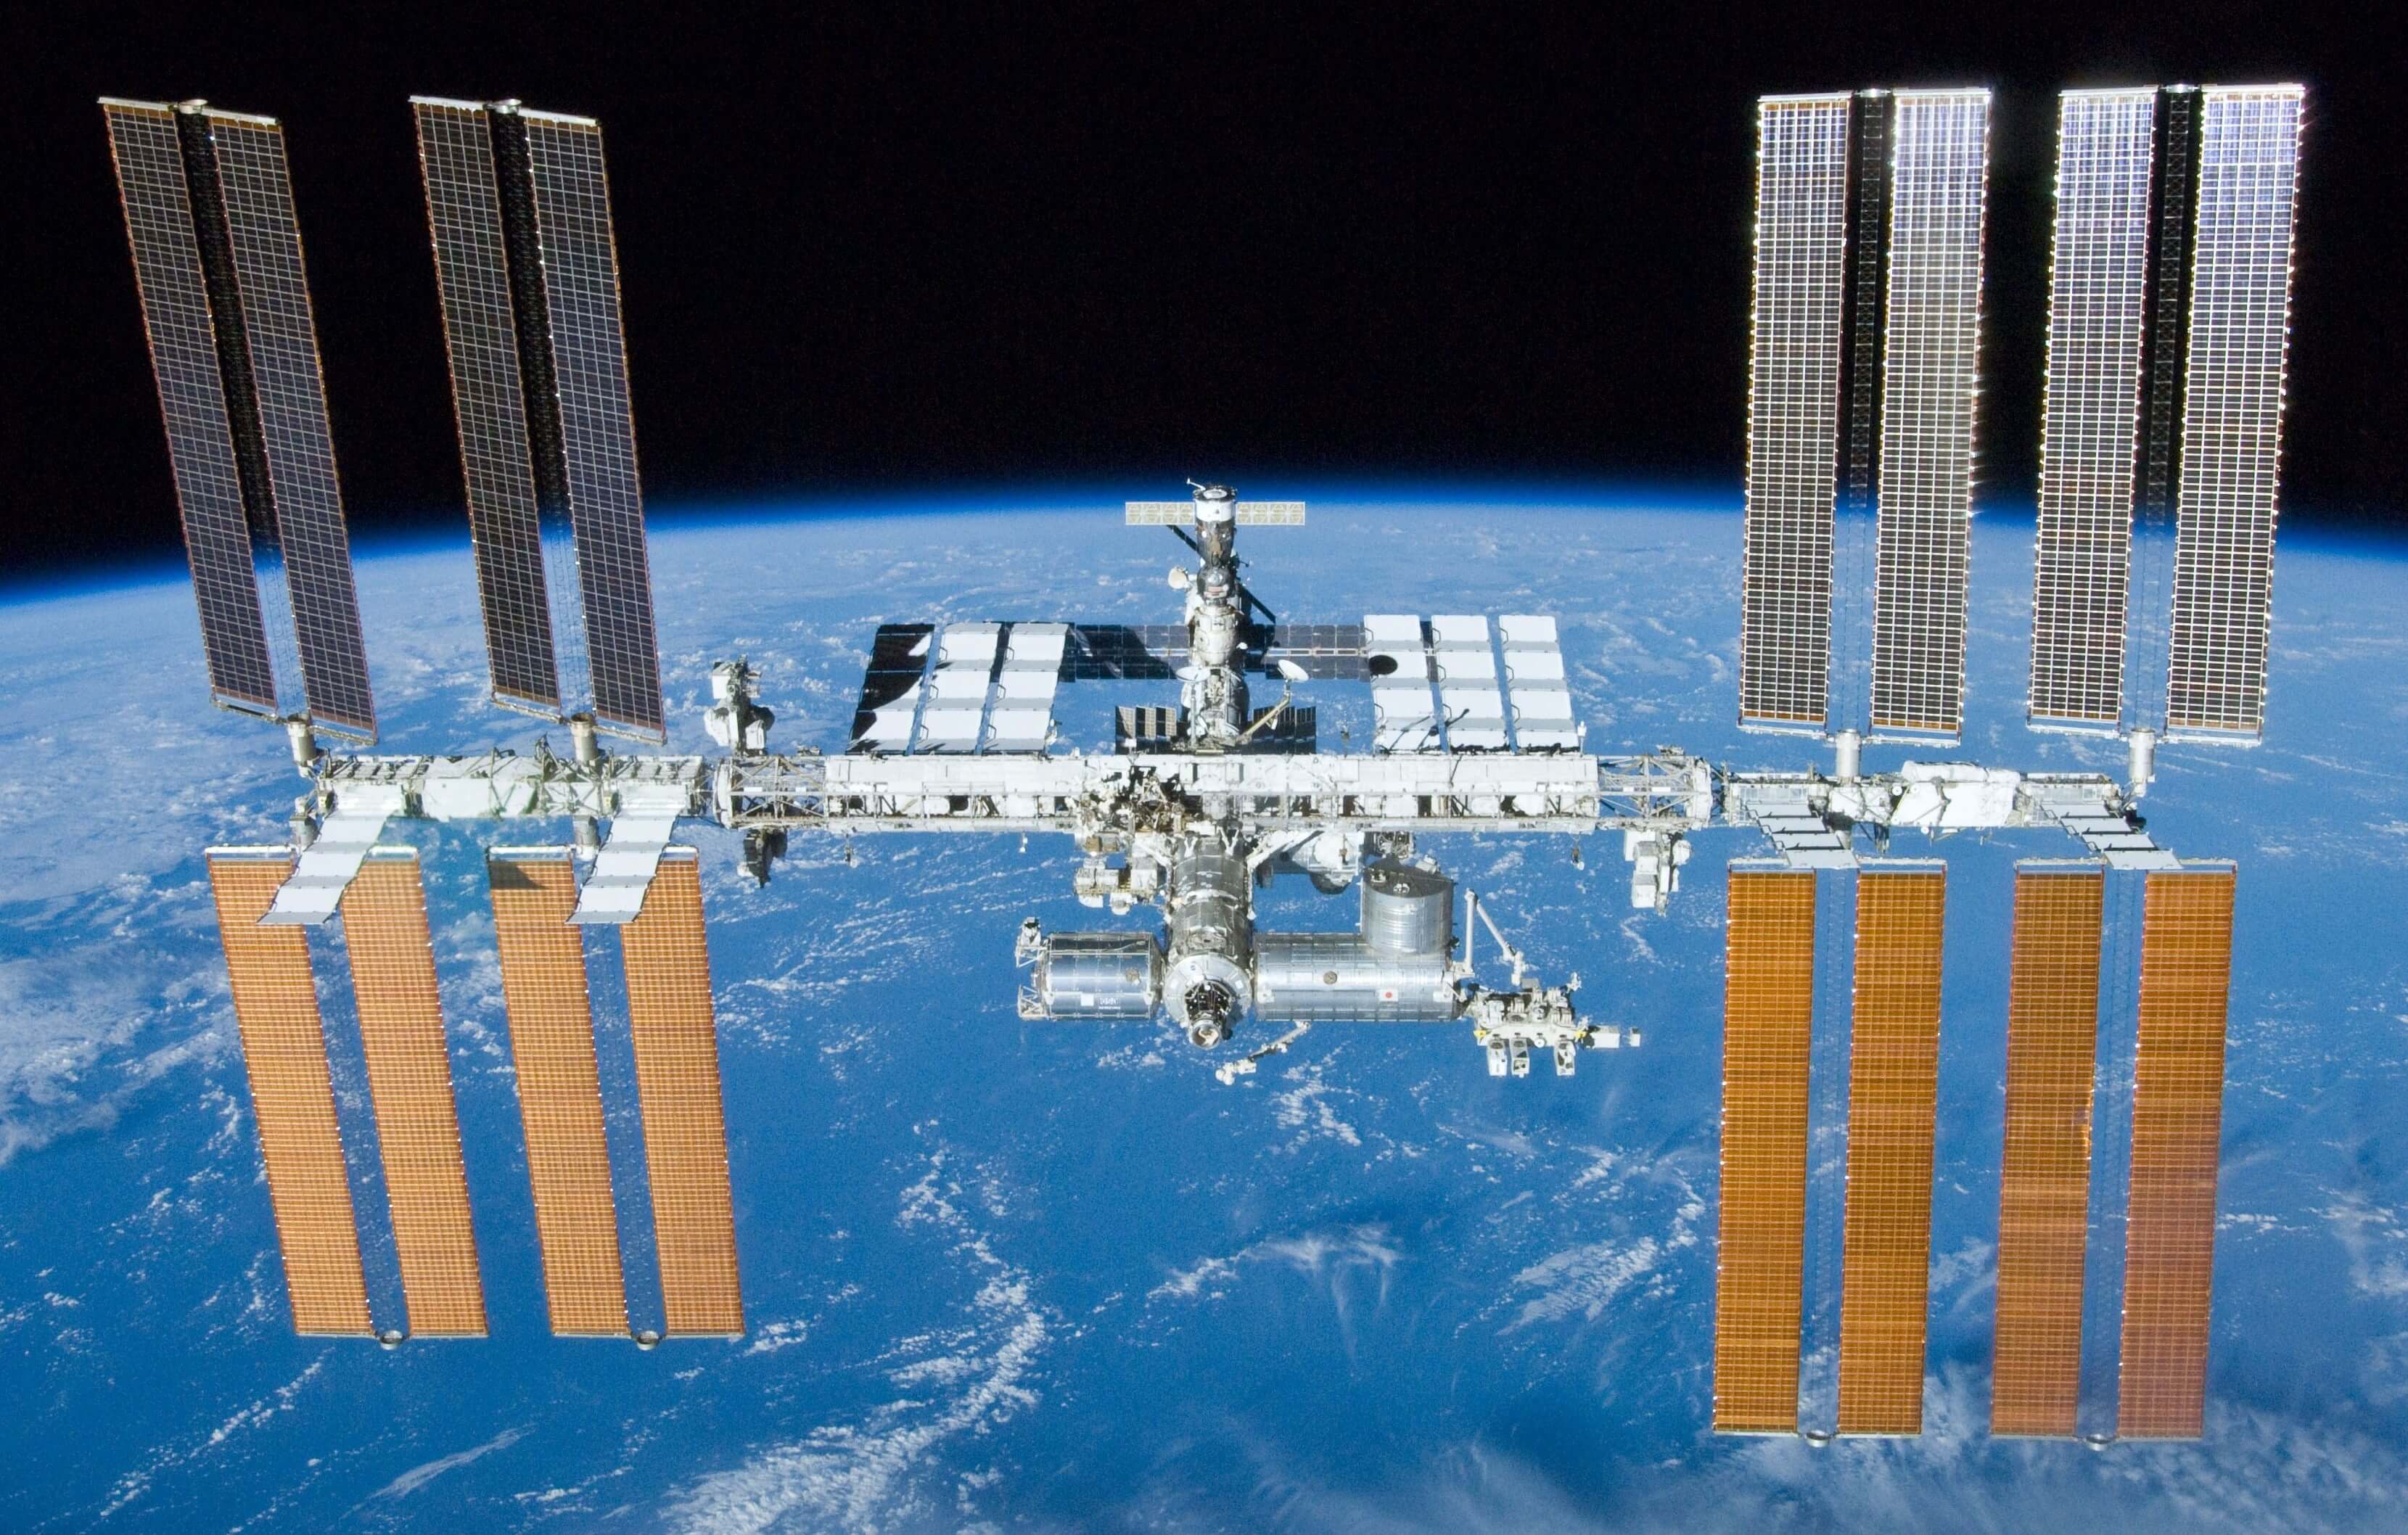 תחנת החלל הבינלאומית, כפי שצולמה ממעבורת החלל אטלנטיס בשנת 2010. מקור: נאס"א.